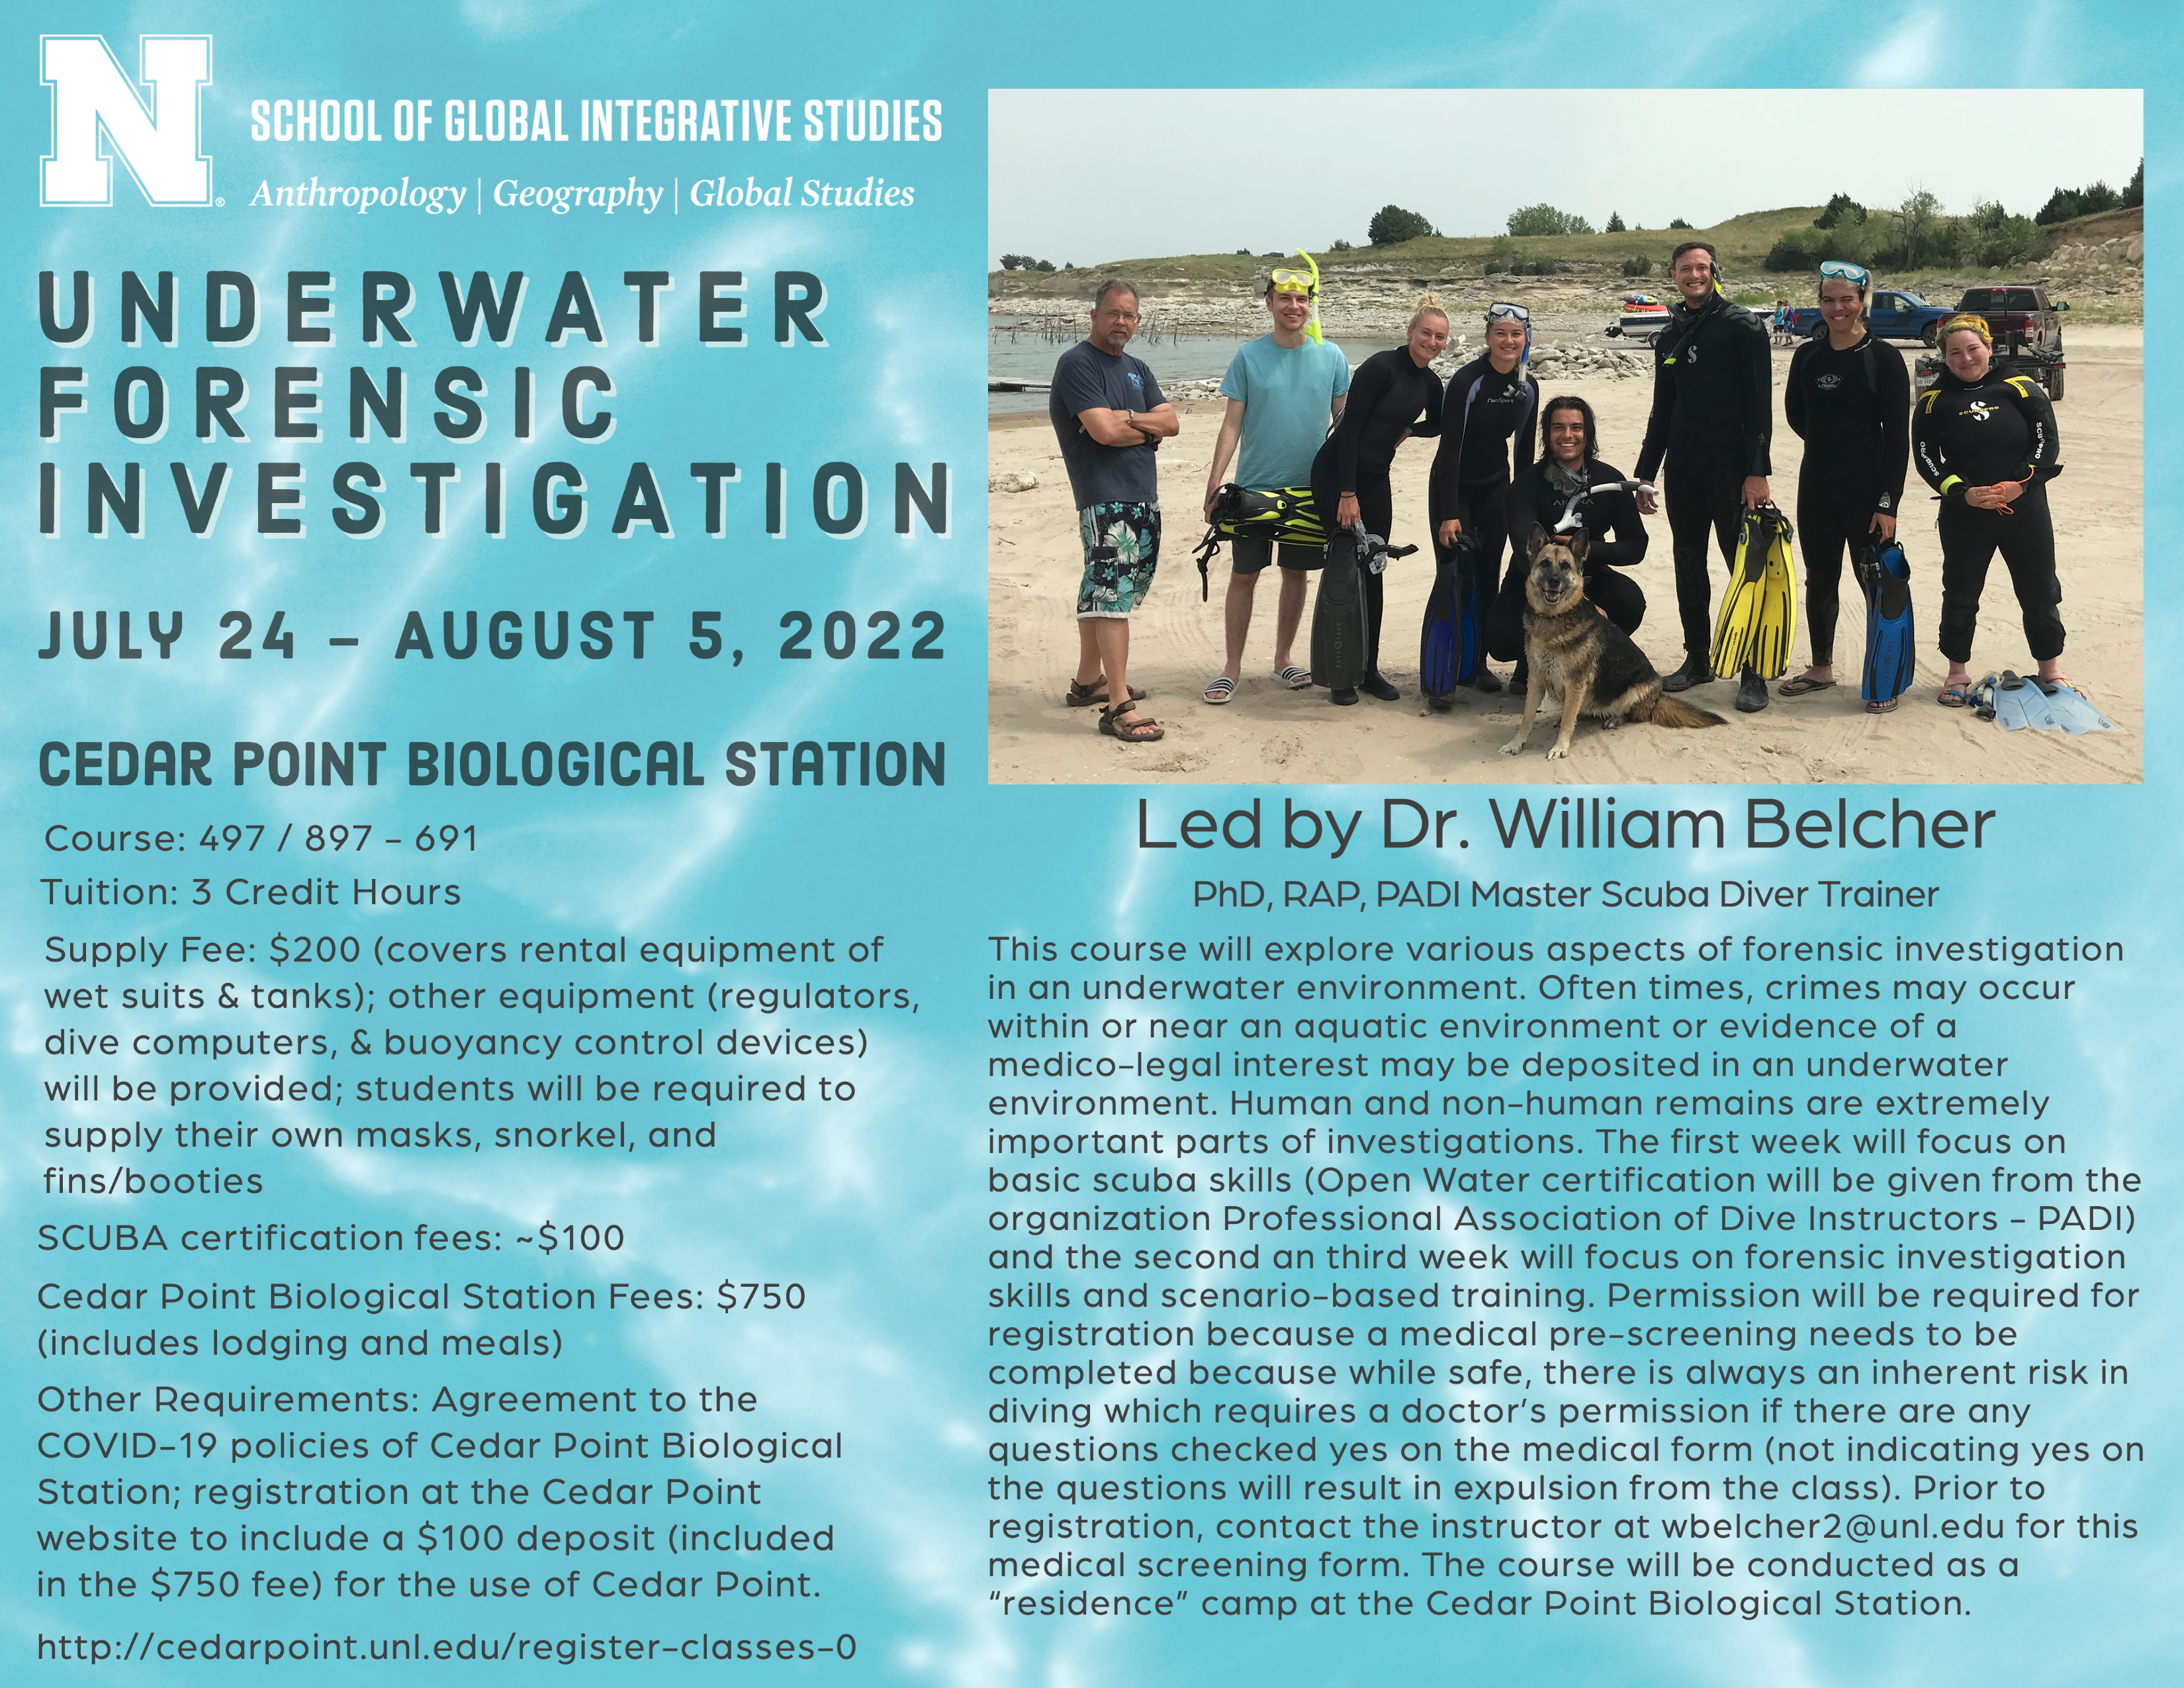 Summer 2022 Field School - ANTH 497: Underwater Forensic Investigation